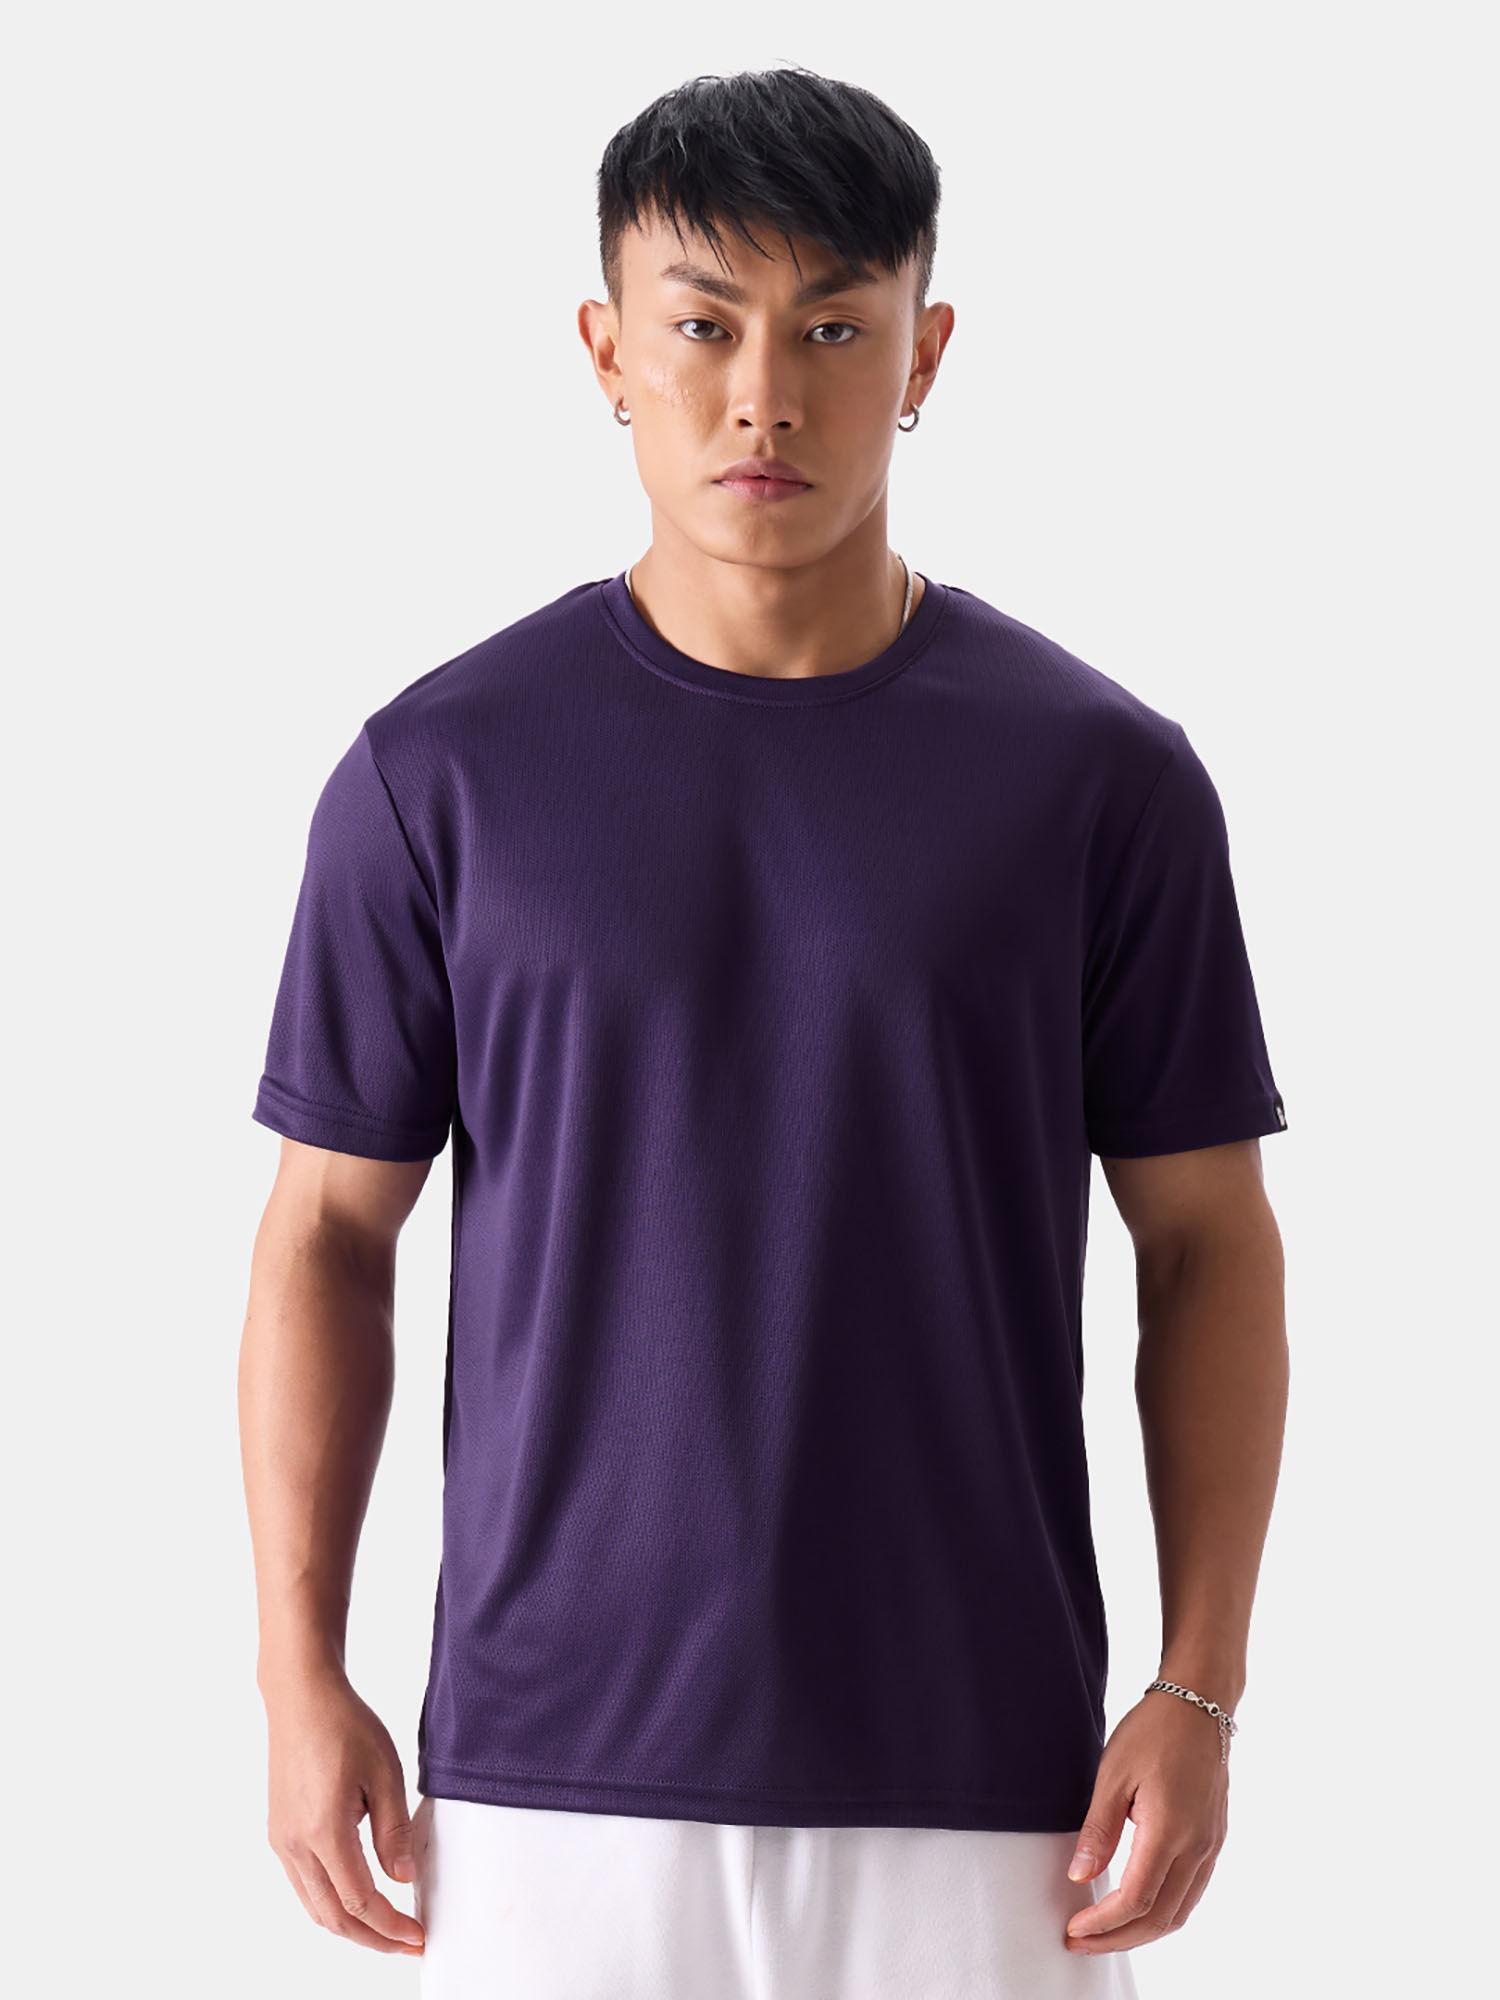 solids purple jerseys for men